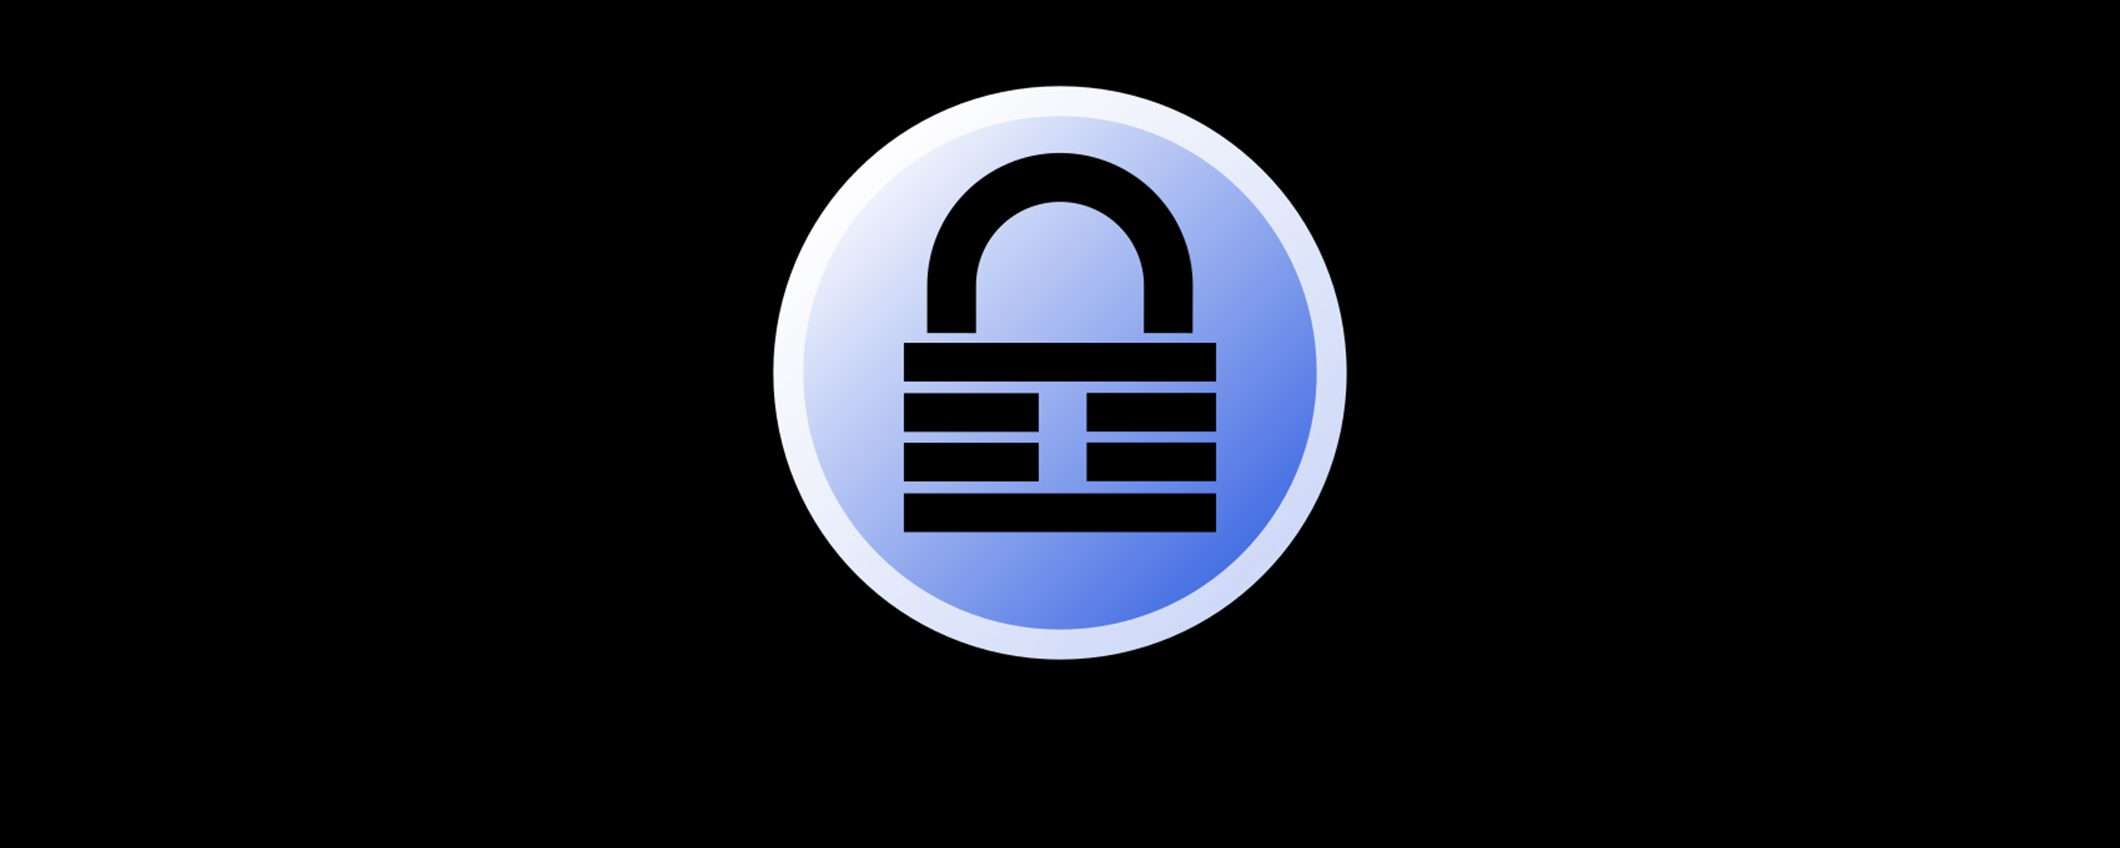 KeePass: sito fake e Punycode per distribuire malware